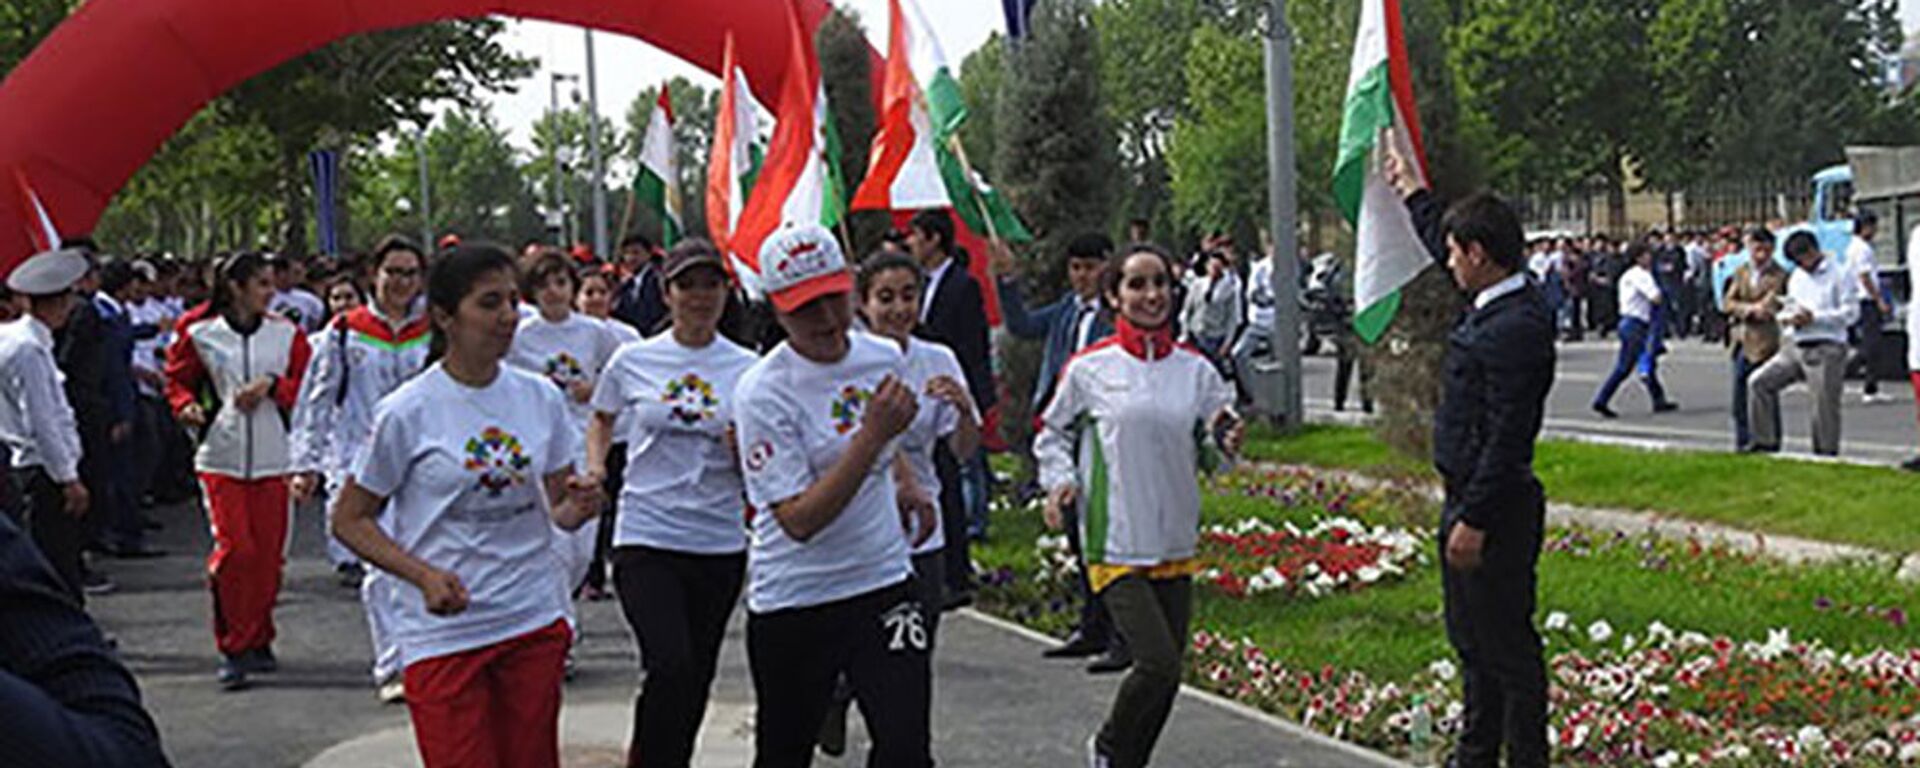 В столице Таджикистана состоялось спортивное мероприятие под названием Бег для веселья (Run for Fun) - Sputnik Тоҷикистон, 1920, 17.05.2023